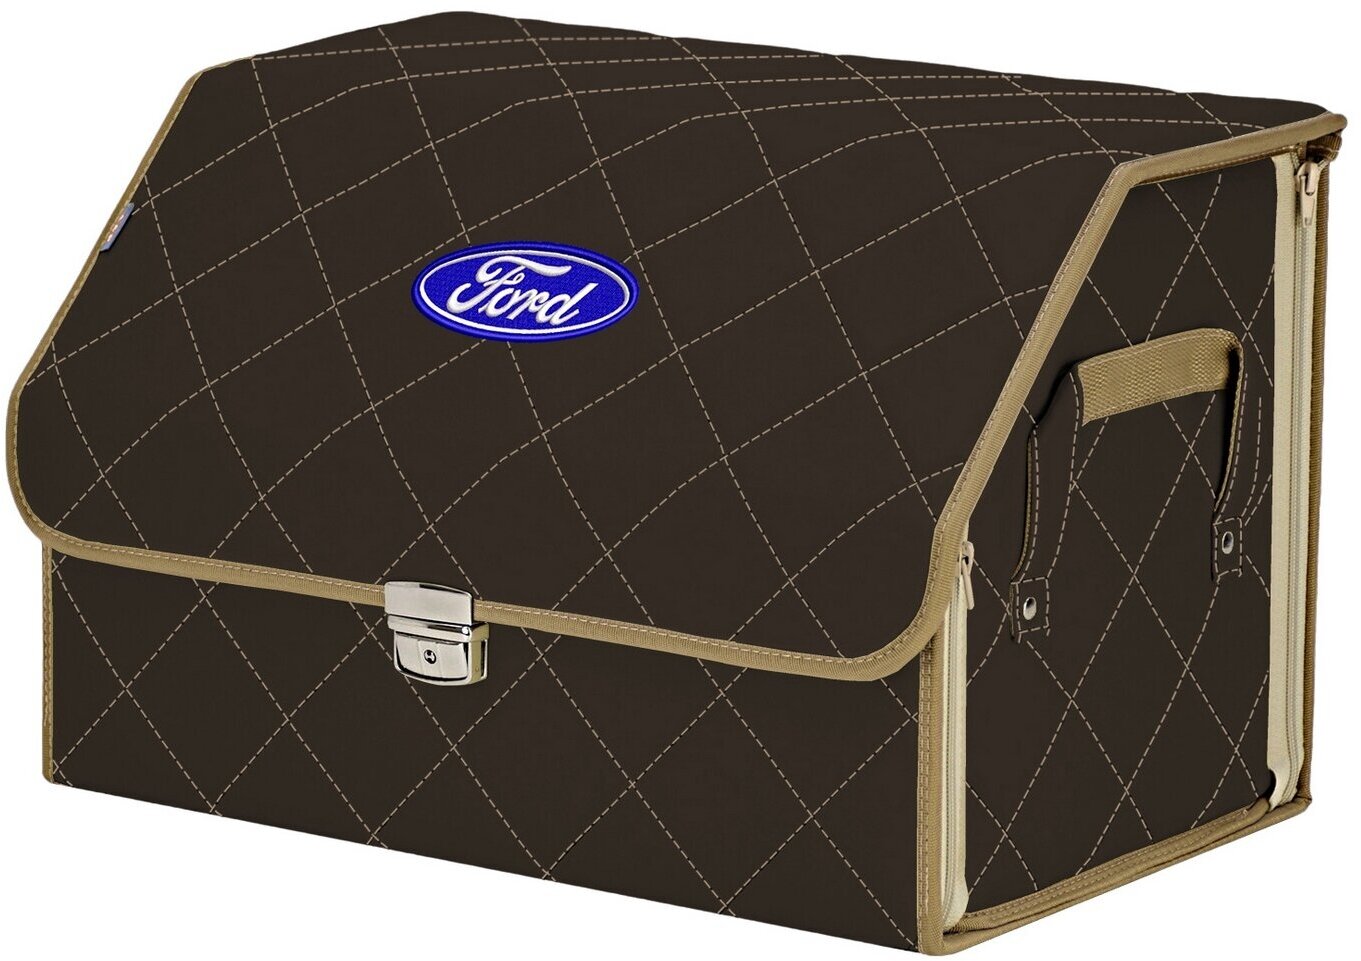 Органайзер-саквояж в багажник "Союз Премиум" (размер L). Цвет: коричневый с бежевой прострочкой Ромб и вышивкой Ford (Форд).